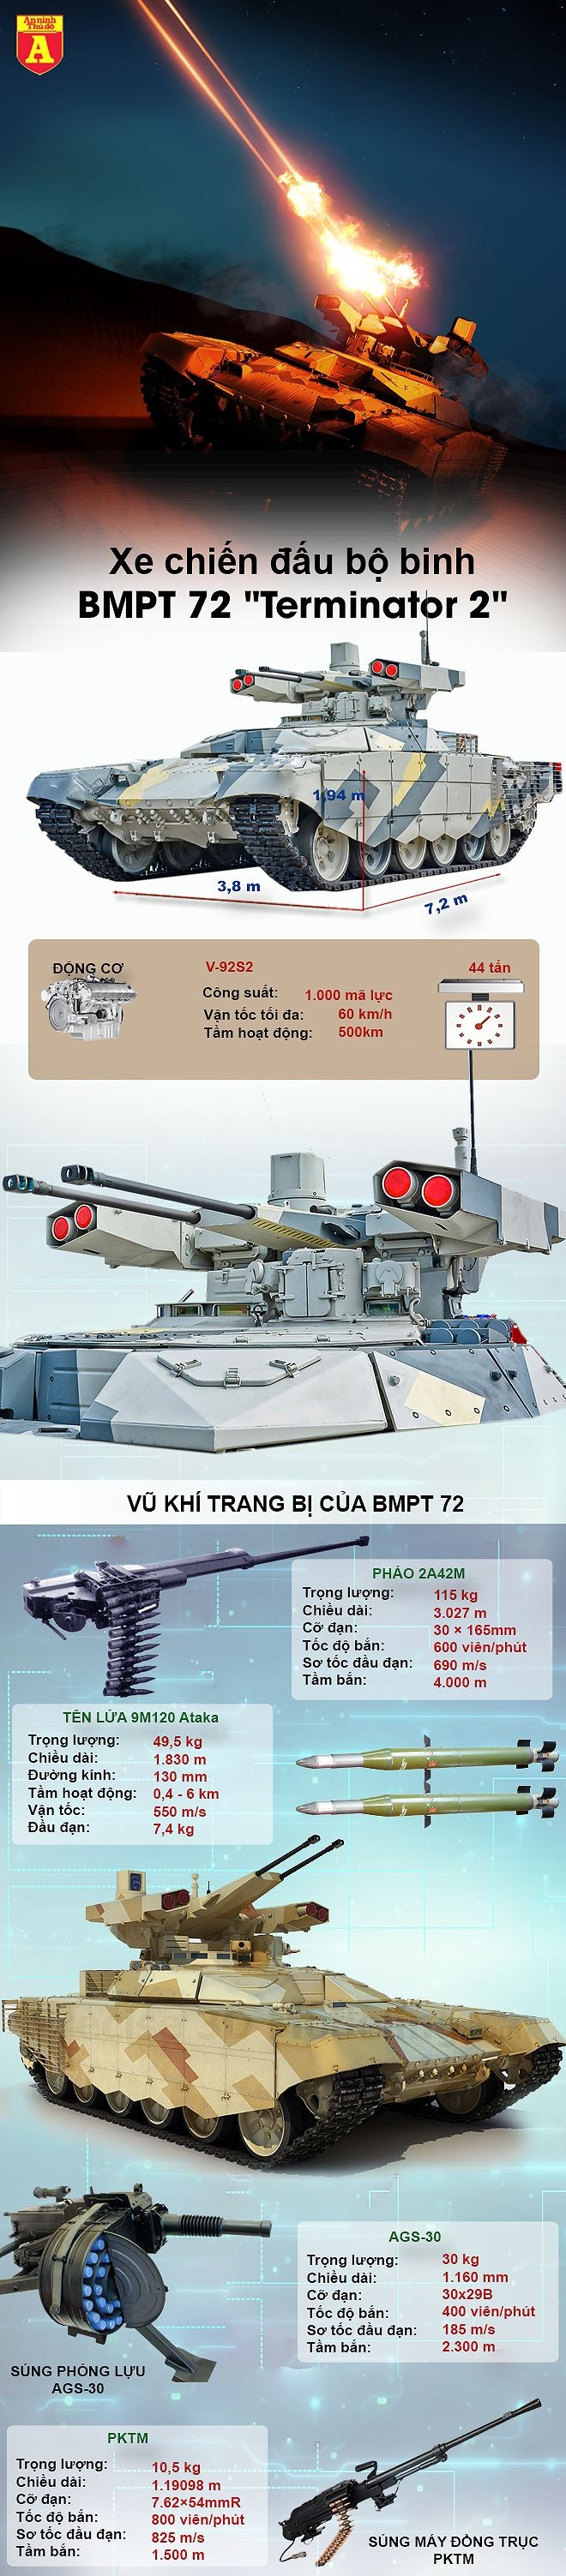 [Infographic] Thực chiến Syria xuất sắc, Nga biên chế hàng loạt "kẻ hủy diệt" BMPT-72 ảnh 2